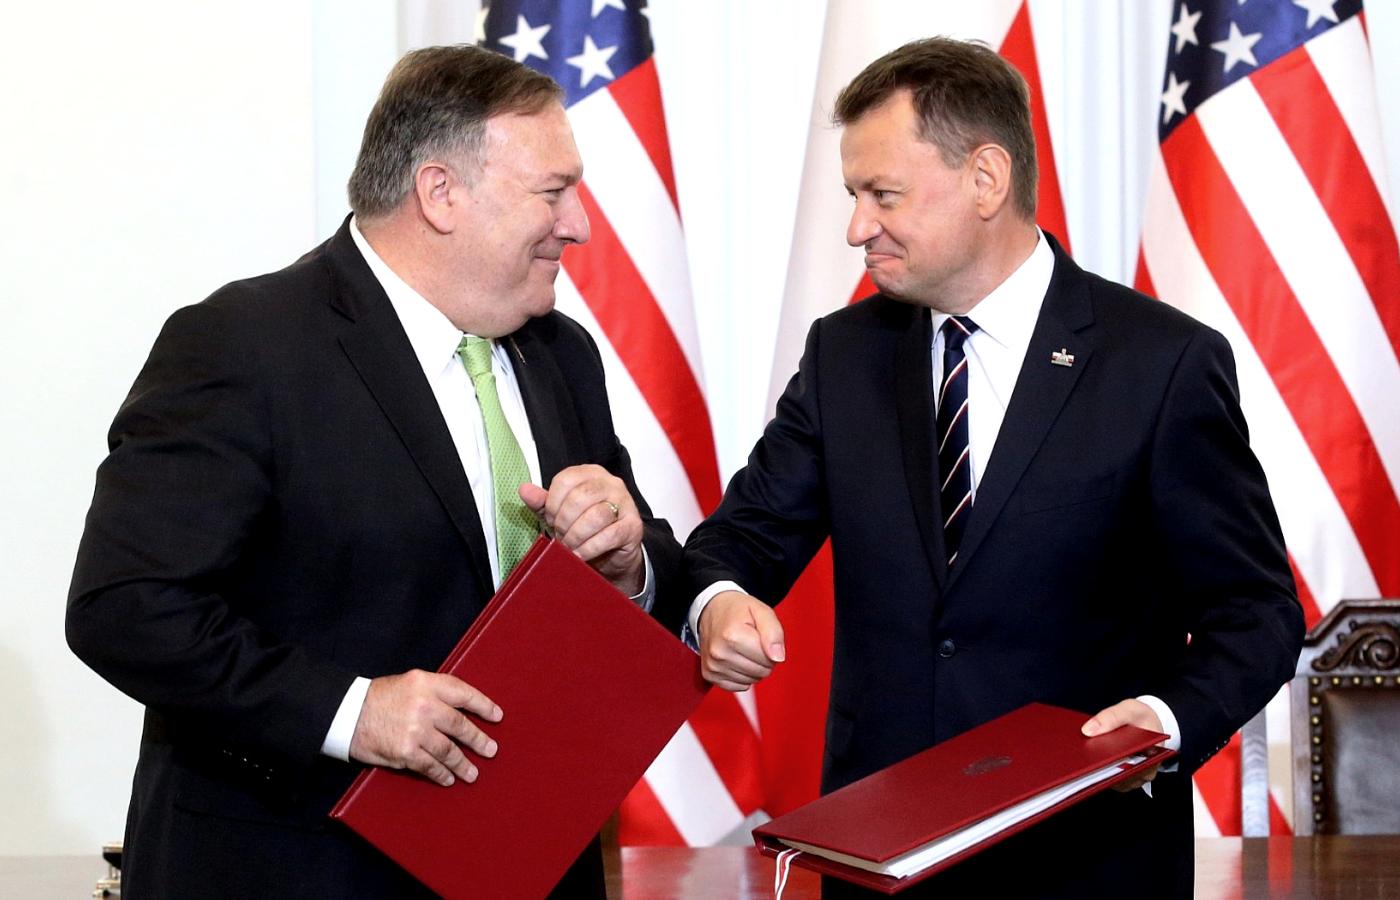 Sekretarz stanu USA Mike Pompeo i szef MON Mariusz Błaszczak po podpisaniu porozumienia wojskowego